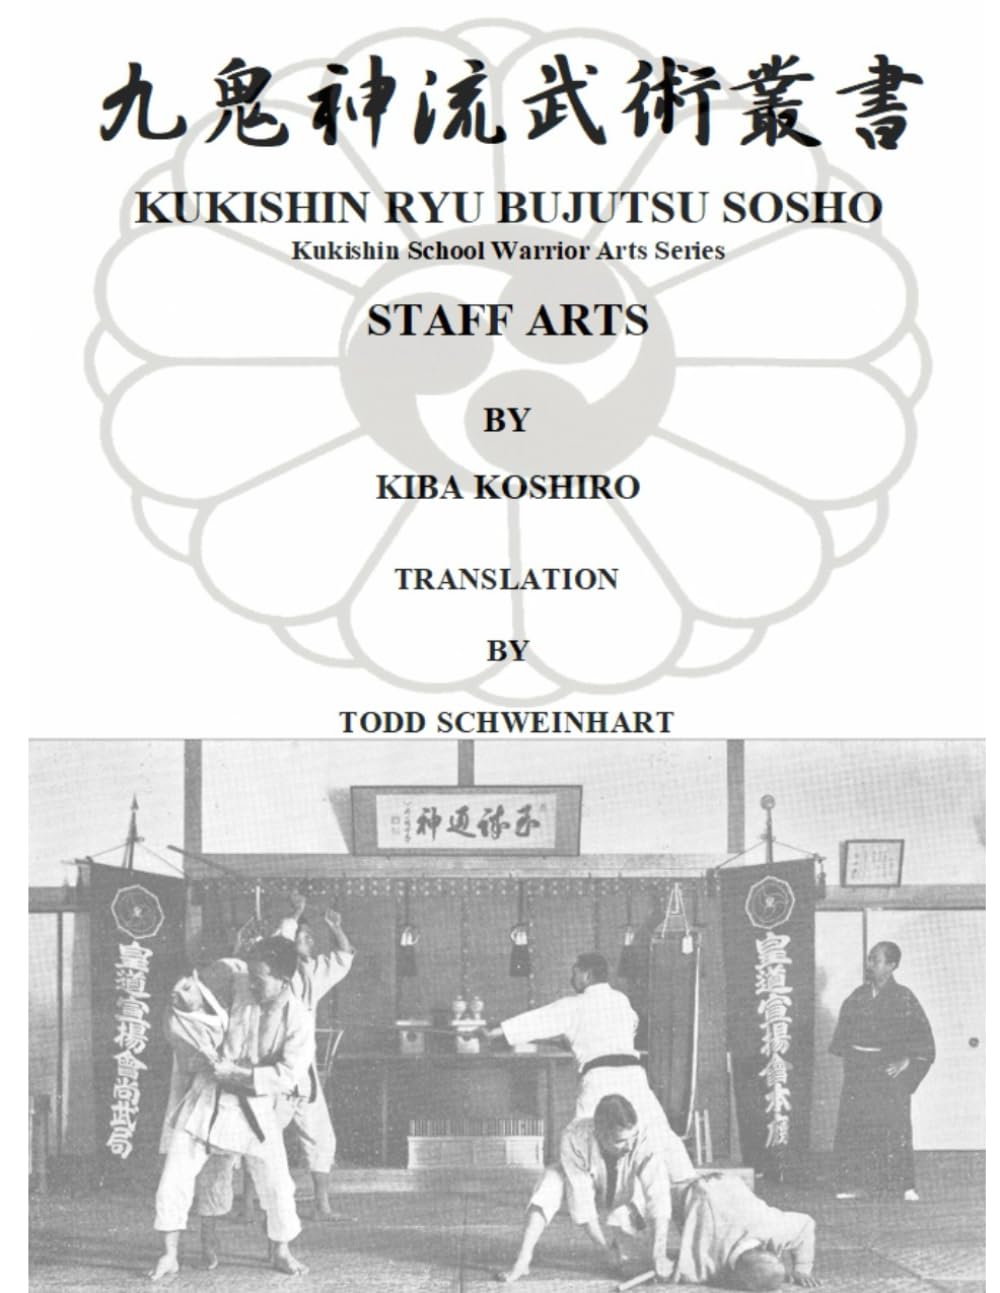 Kukishin Ryu Bujutsu: Bojutsu Staff Arts Book by Koshiro Kiba